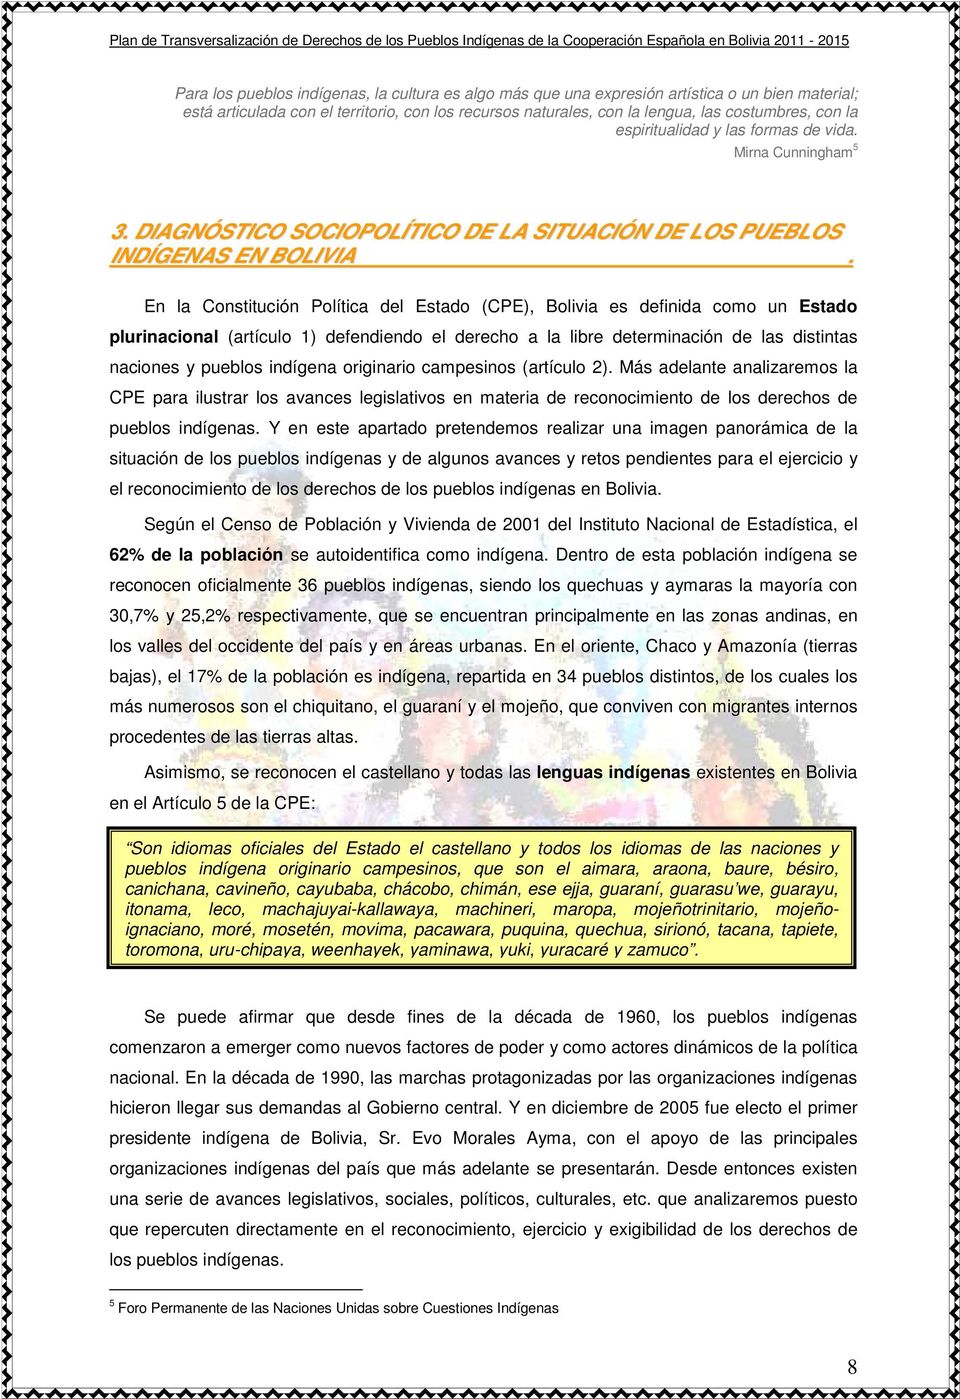 En la Constitución Política del Estado (CPE), Bolivia es definida como un Estado plurinacional (artículo 1) defendiendo el derecho a la libre determinación de las distintas naciones y pueblos